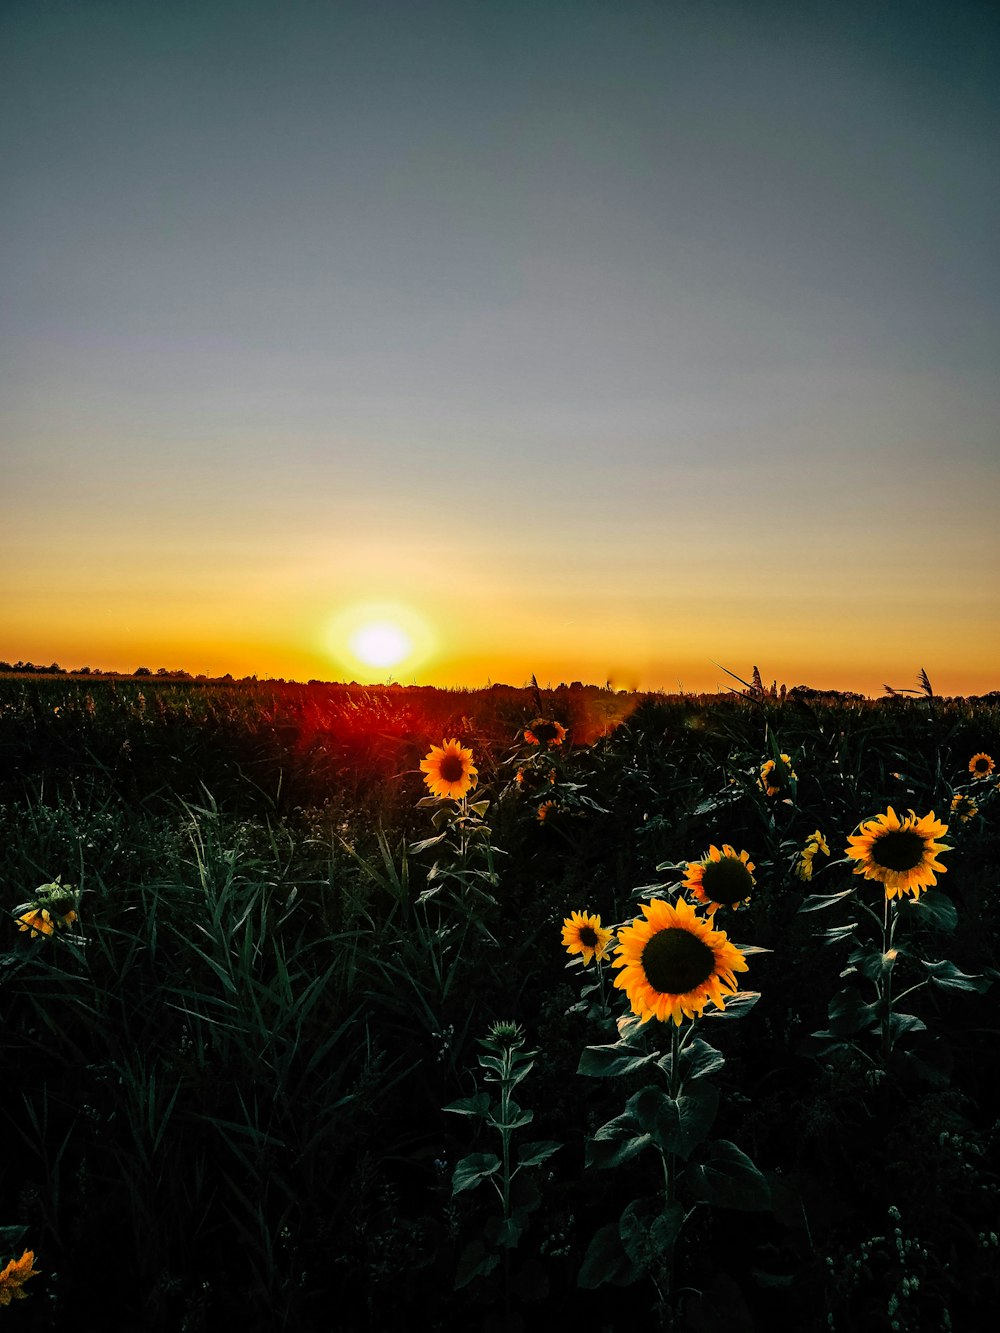 sunflower field at golden hour